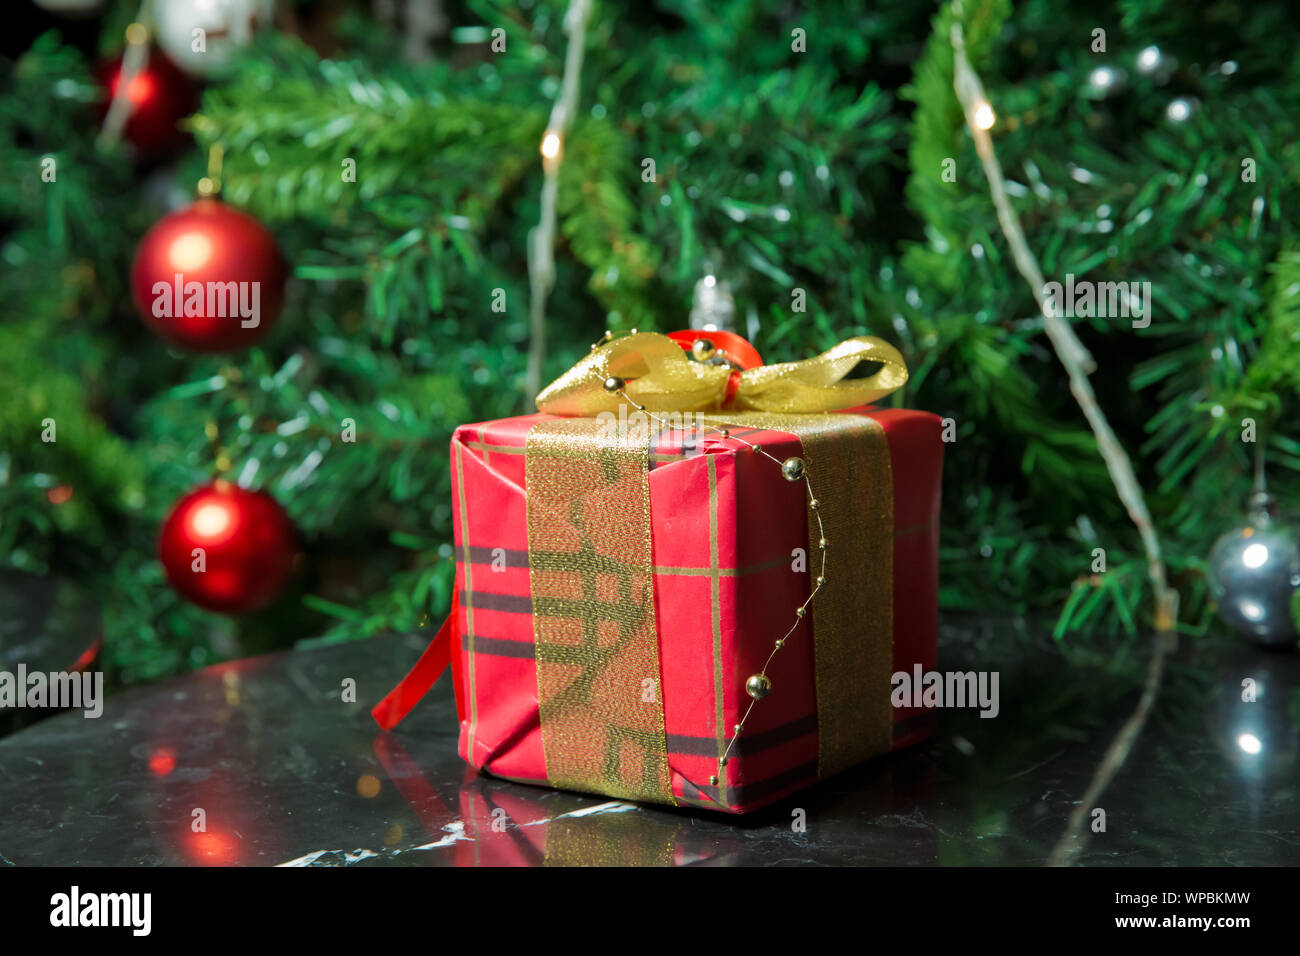 Geschenke unter dem Weihnachtsbaum mit golg Band und Schleifchen verziert. Rot Weihnachtsgeschenk. Schöne Weihnachten Baum mit roten Kugeln. Stockfoto